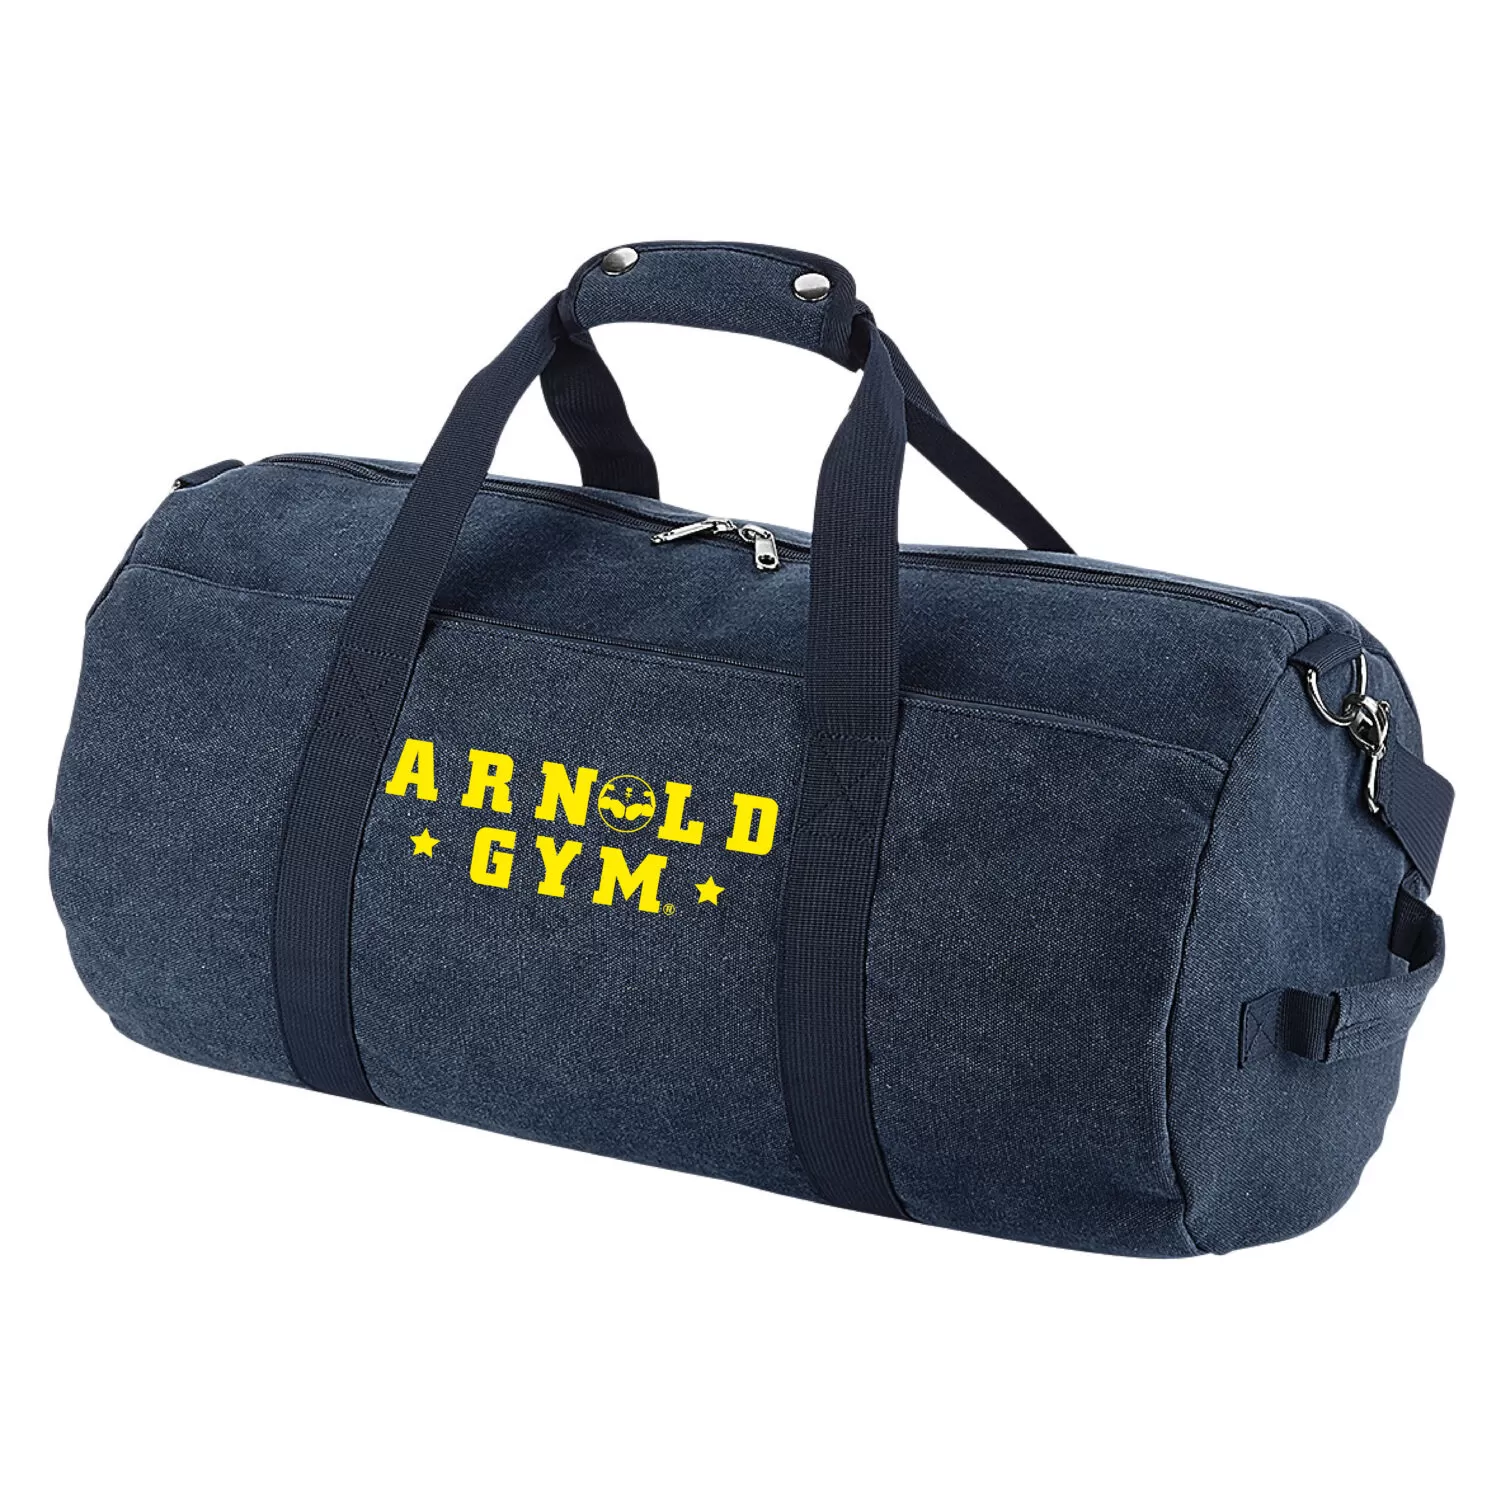 Vintage Gym Barrel Bag Arnold gym bag navy